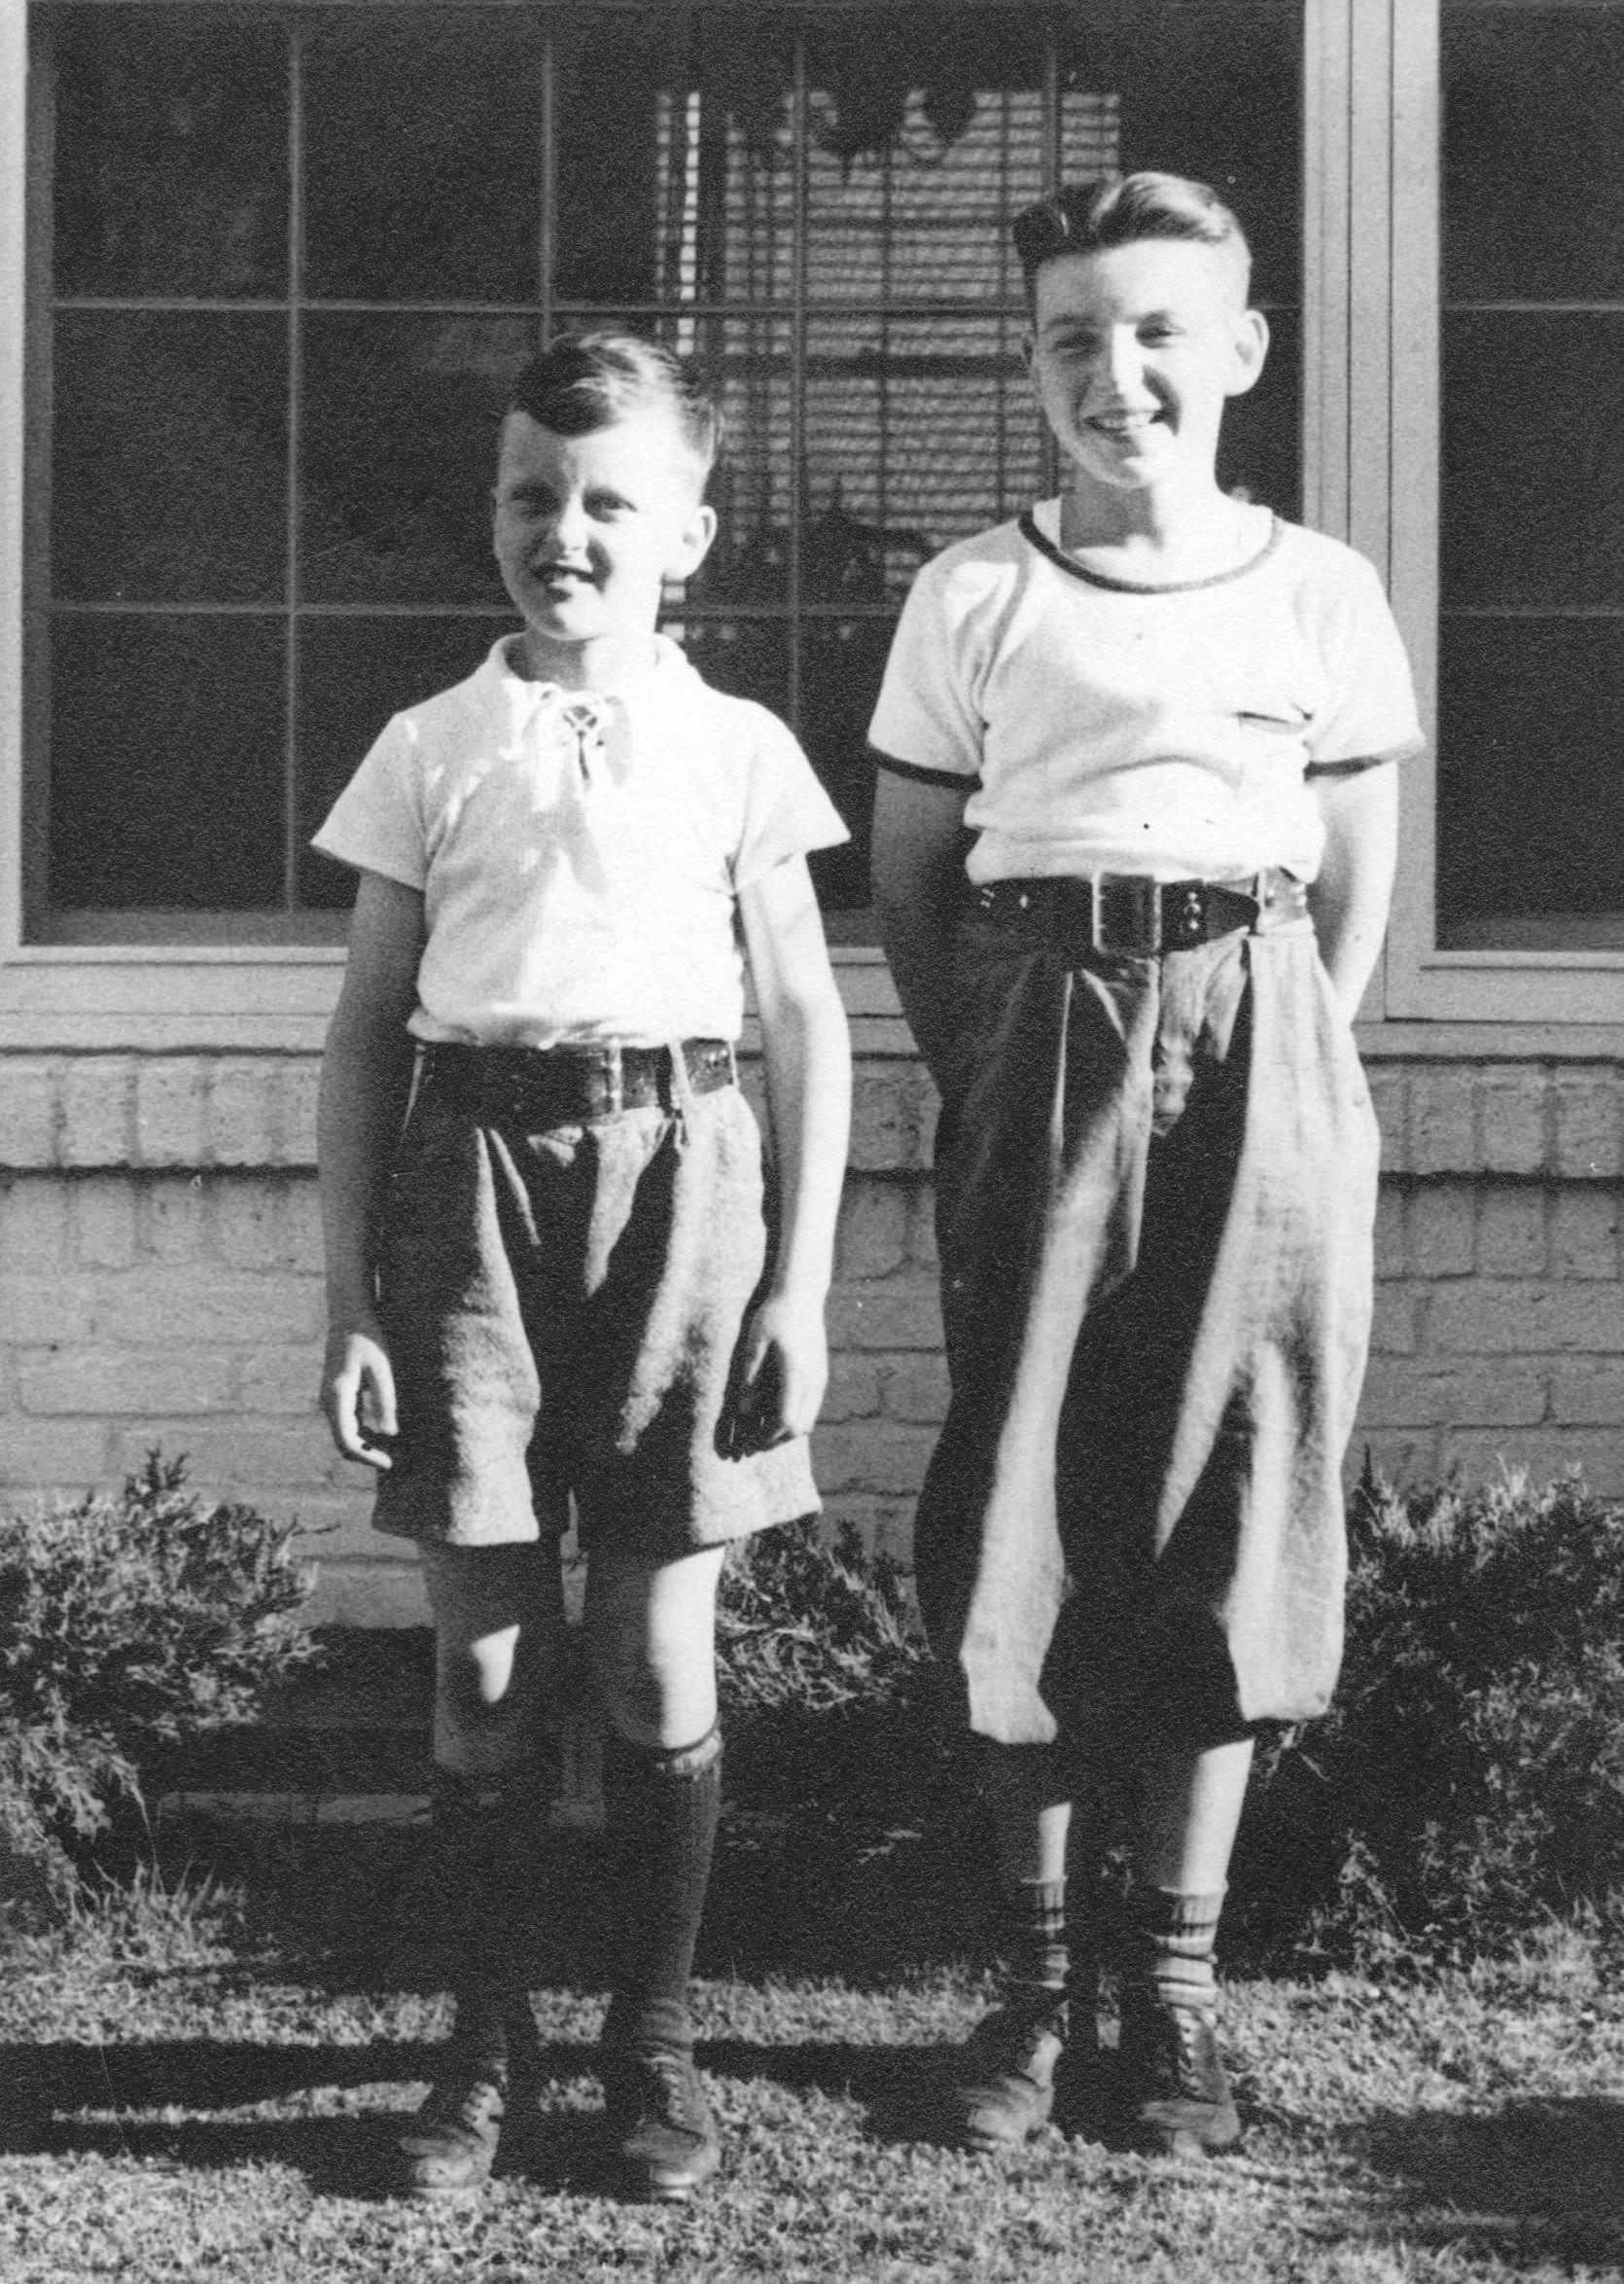 Jim and Bud Crawmer, at 3917 Paunack Avenue, ca. 1940